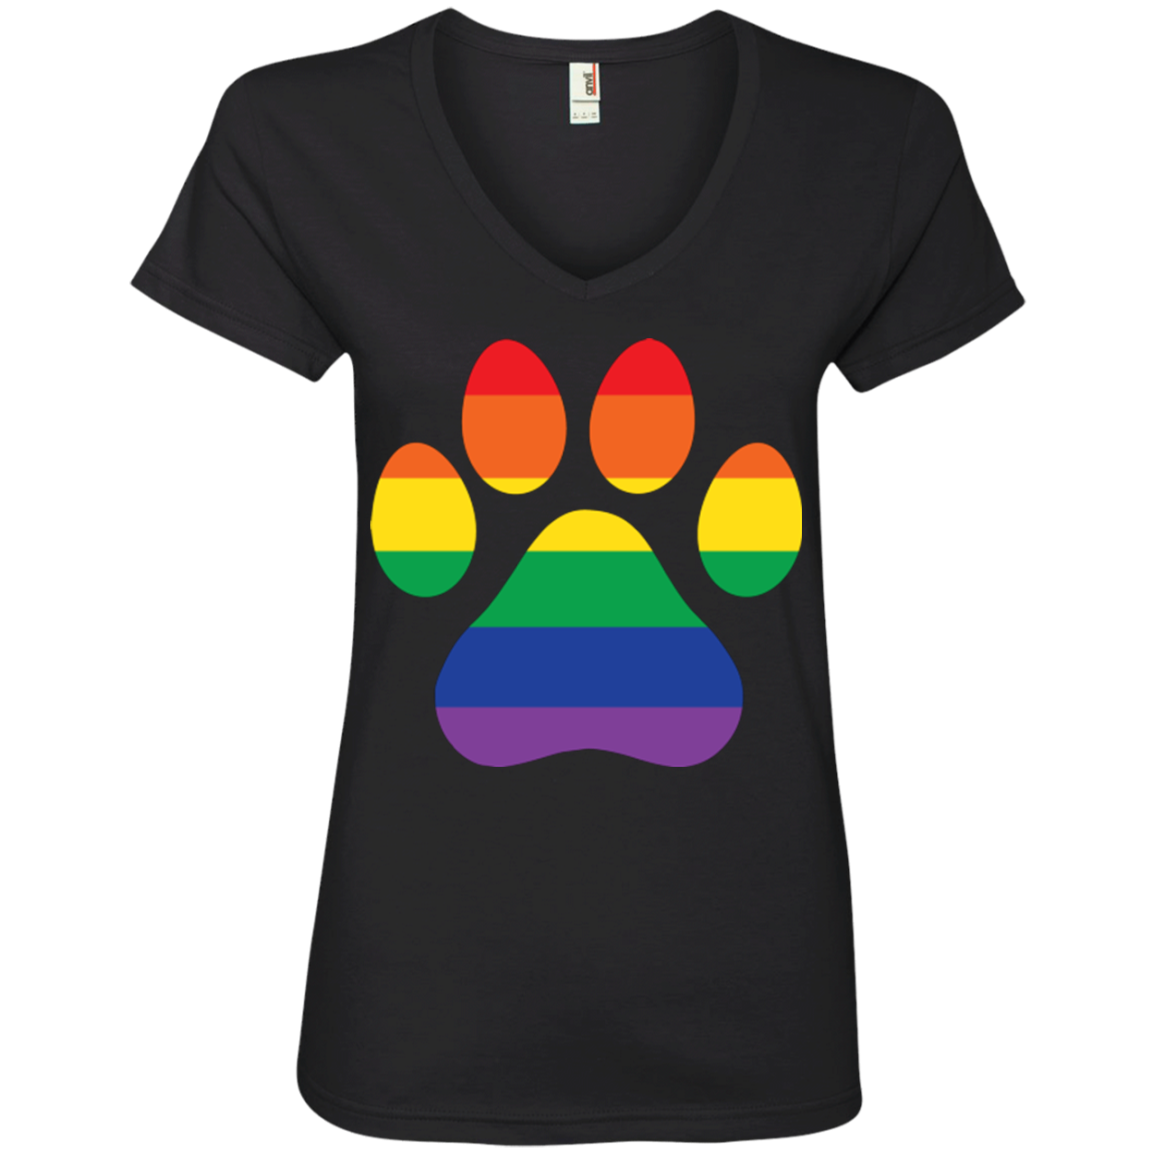 Rainbow Paw Print LGBT Pride black tshirt for women v-neck Half sleeves LGBT Pride tshirt for women